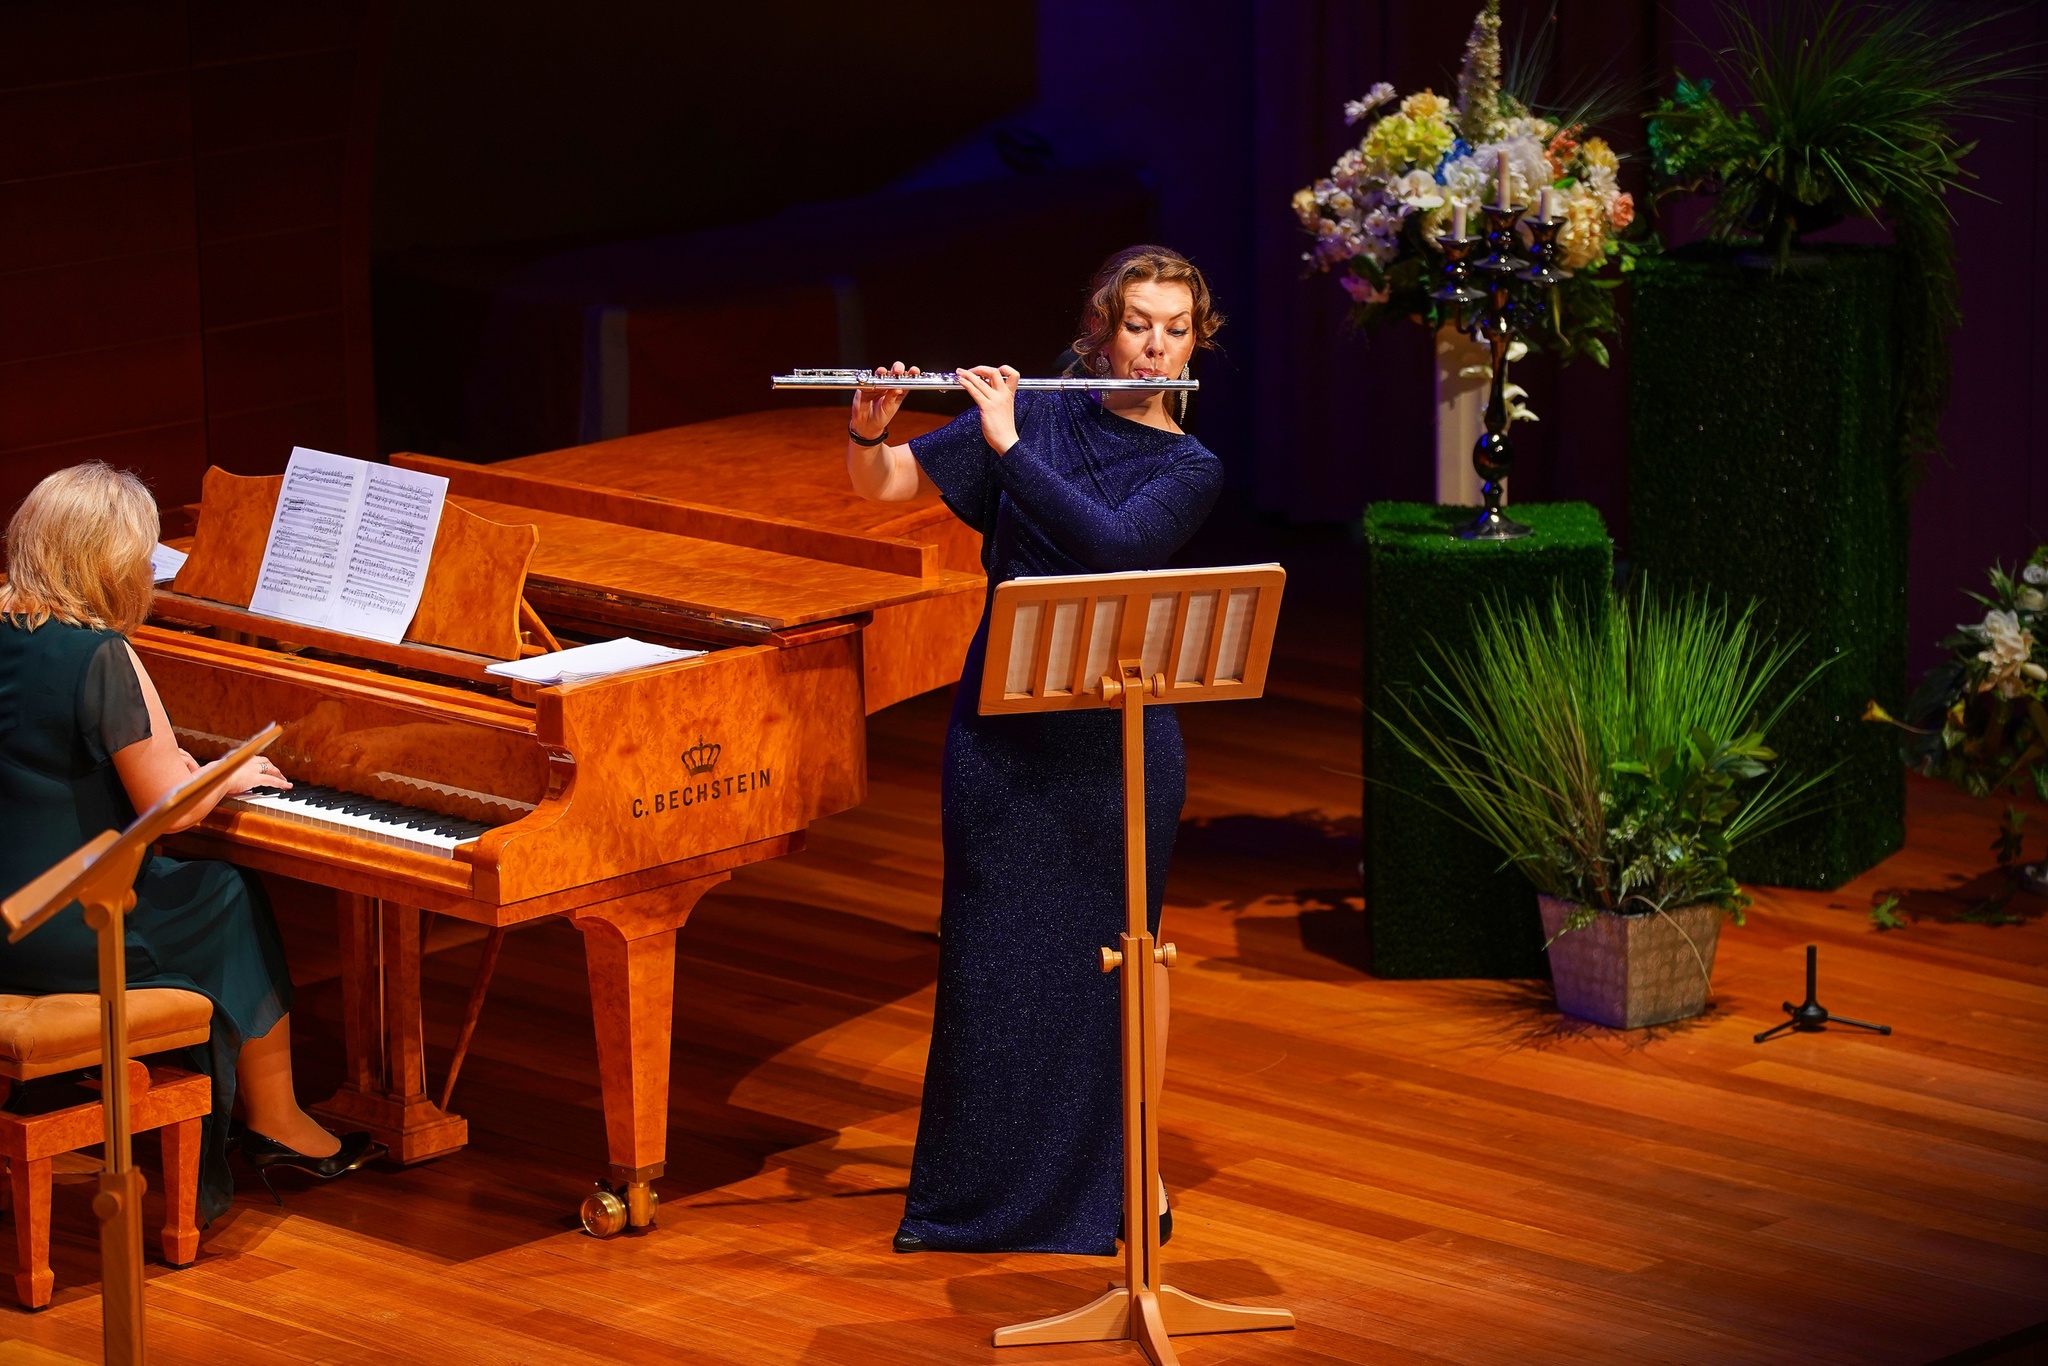 ﻿Органный зал "Югра-Классик" на время стал средоточием женской красоты вкупе с прекрасным звучанием флейты, а также саксофона и фортепиано.